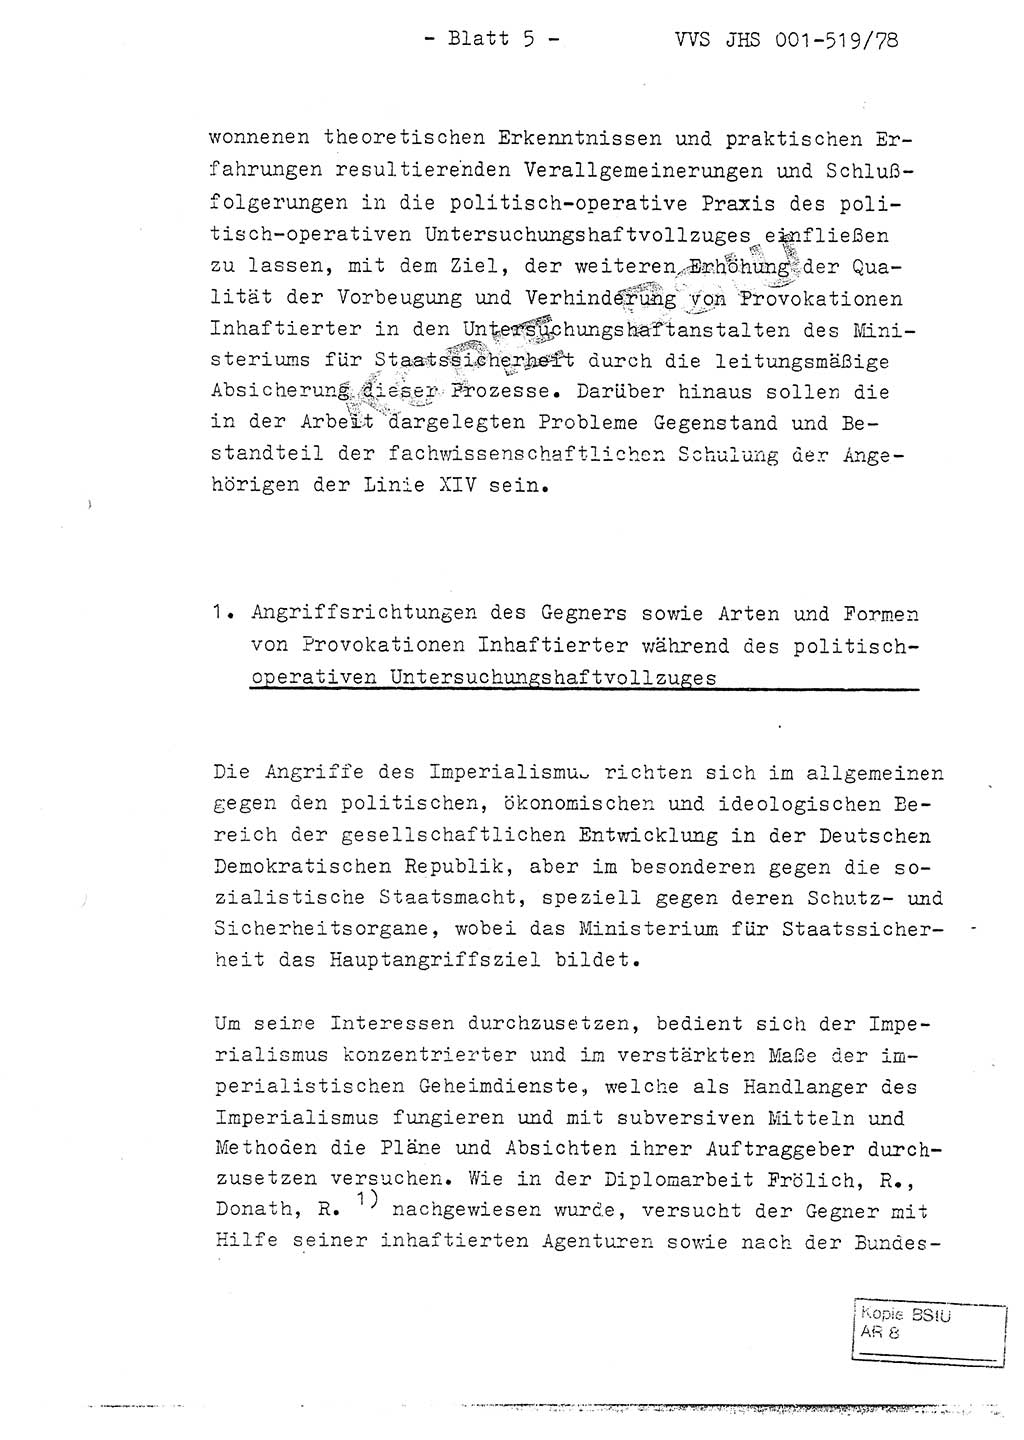 Fachschulabschlußarbeit Hauptmann Alfons Lützelberger (Abt. ⅩⅣ), Ministerium für Staatssicherheit (MfS) [Deutsche Demokratische Republik (DDR)], Juristische Hochschule (JHS), Vertrauliche Verschlußsache (VVS) 001-519/78, Potsdam 1978, Blatt 5 (FS-Abschl.-Arb. MfS DDR JHS VVS 001-519/78 1978, Bl. 5)